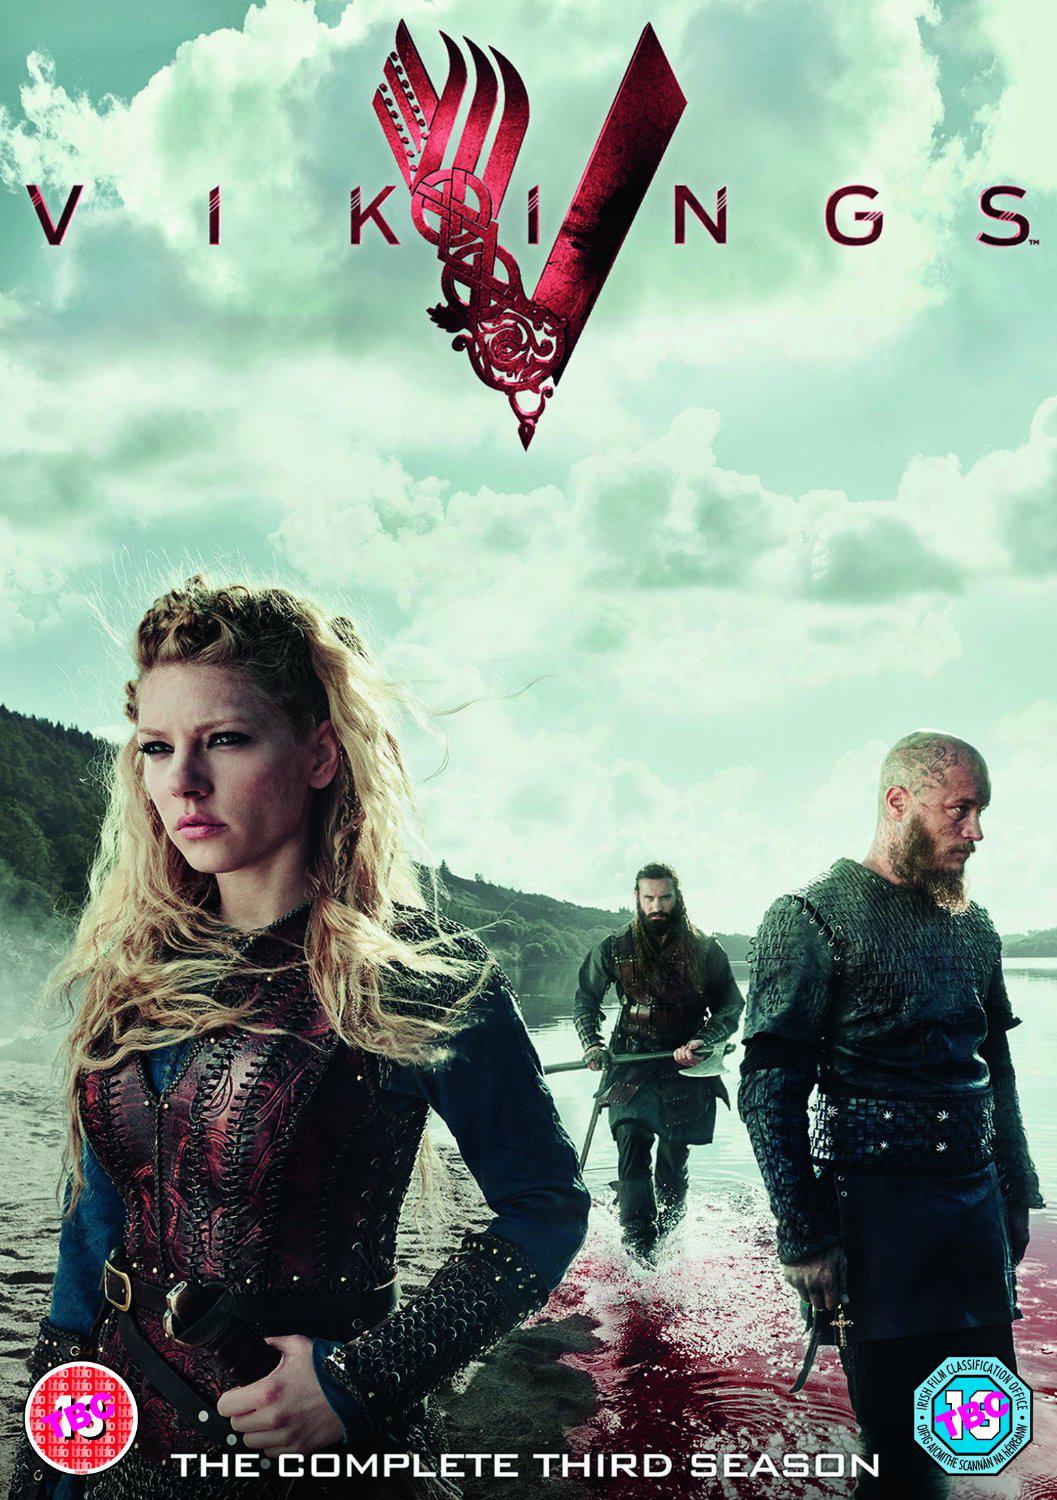 维京传奇 第三季 全10集 [肉酱盘DIY 简繁英双语字幕] Vikings Season S03 1080p BluRay AVC DTS-HD MA5 1-PWt@OurBits[131.69GB]-1.jpg